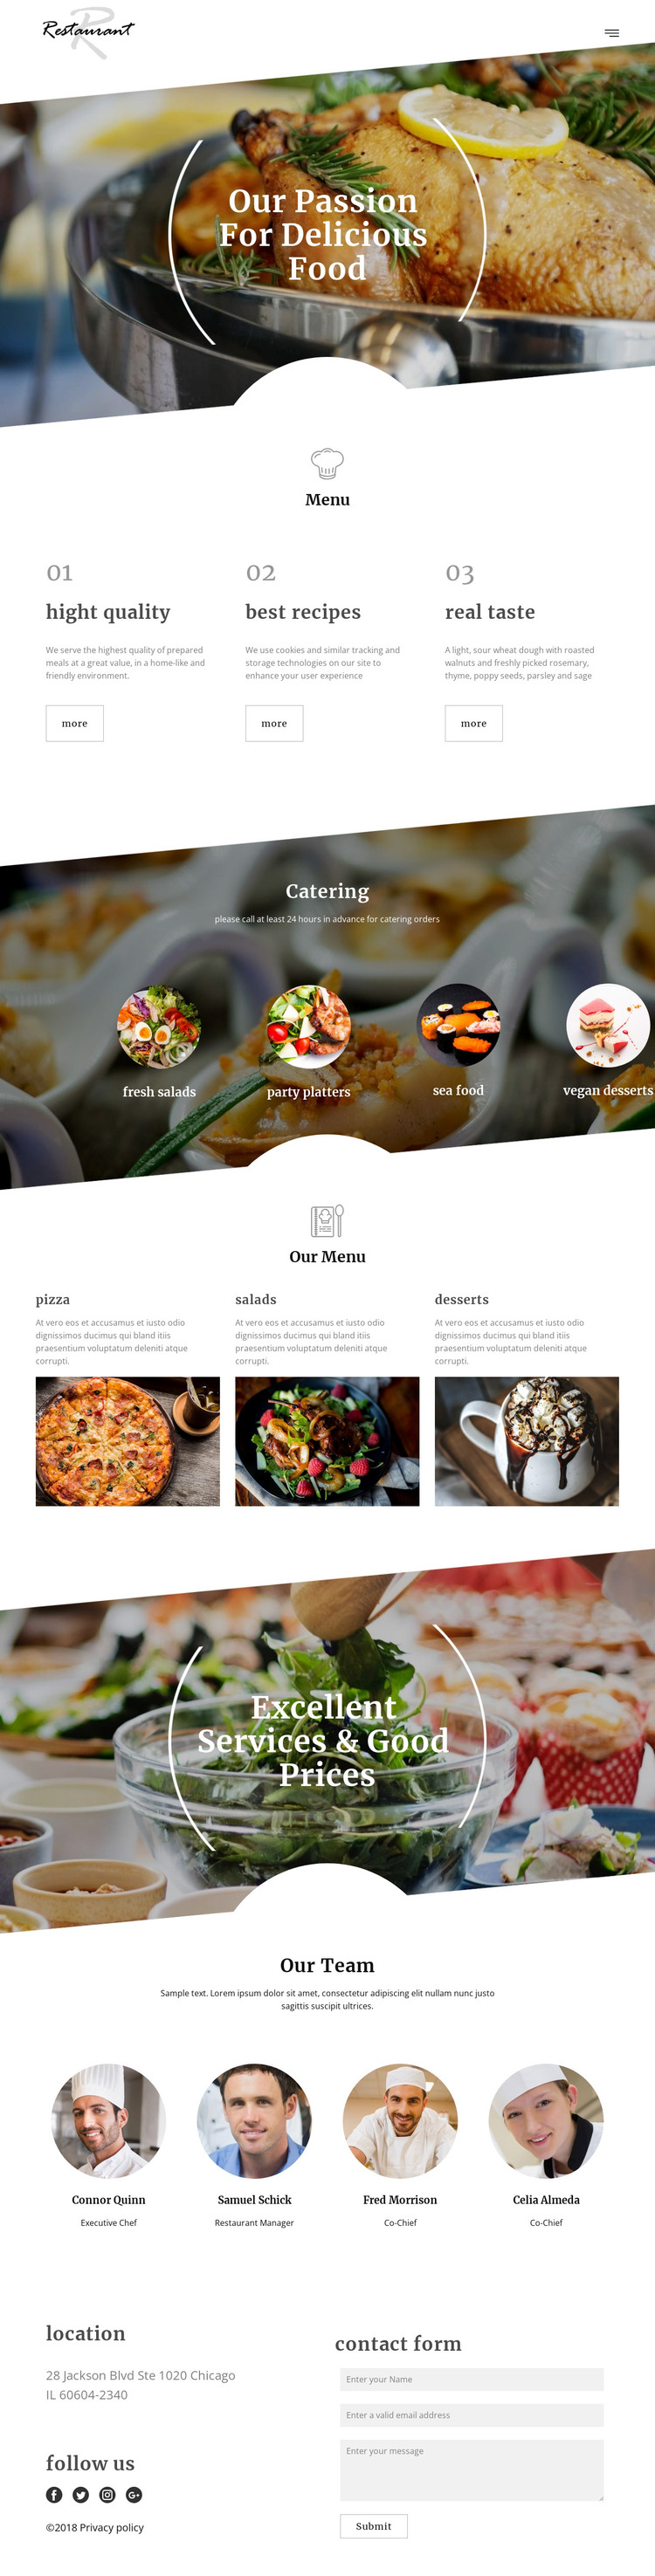 Executive chef recipes Web Design